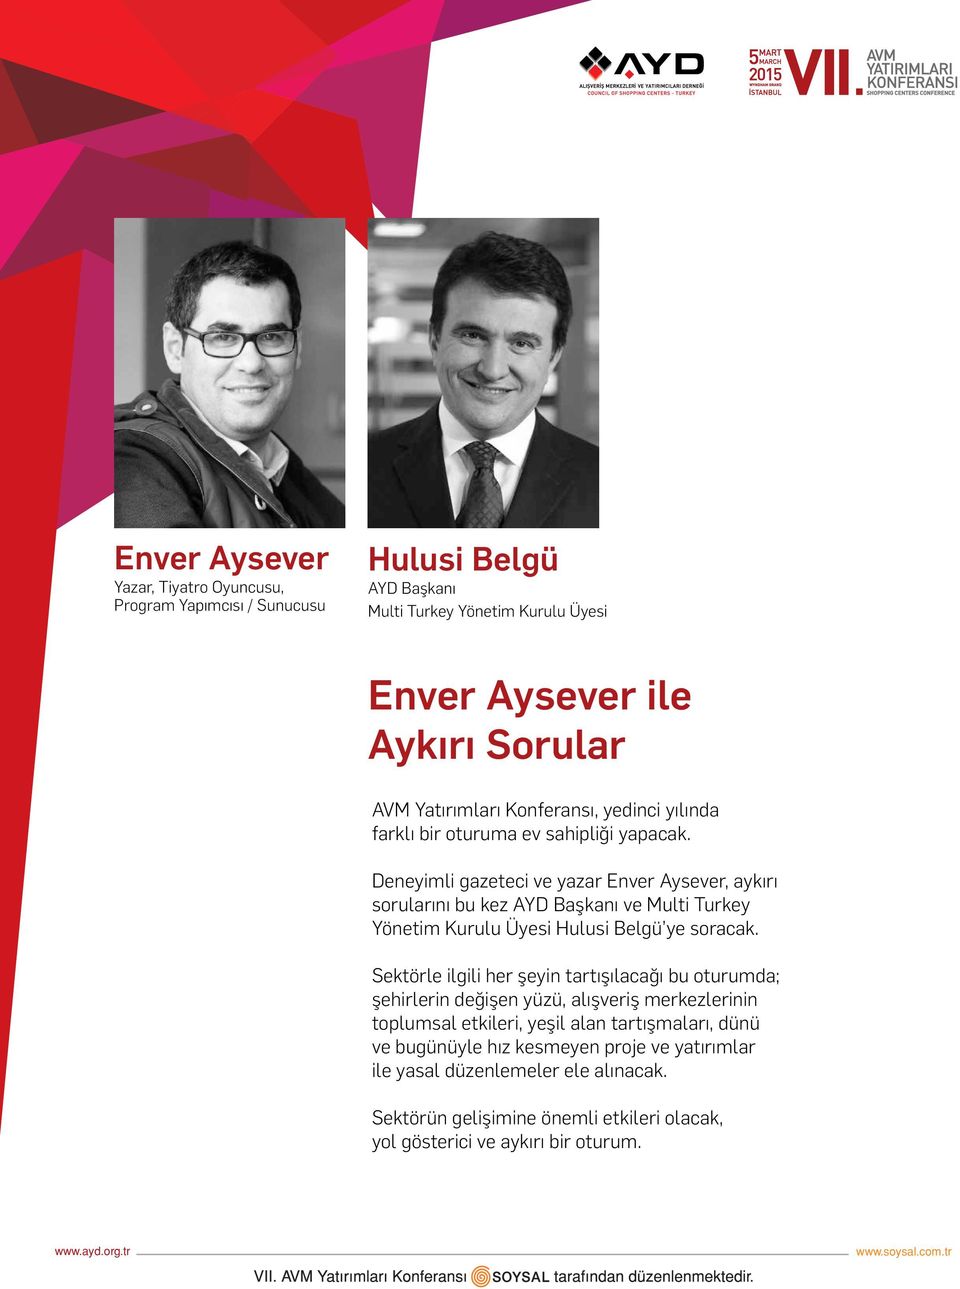 Deneyimli gazeteci ve yazar Enver Aysever, aykırı sorularını bu kez AYD Başkanı ve Multi Turkey Yönetim Kurulu Üyesi Hulusi Belgü ye soracak.